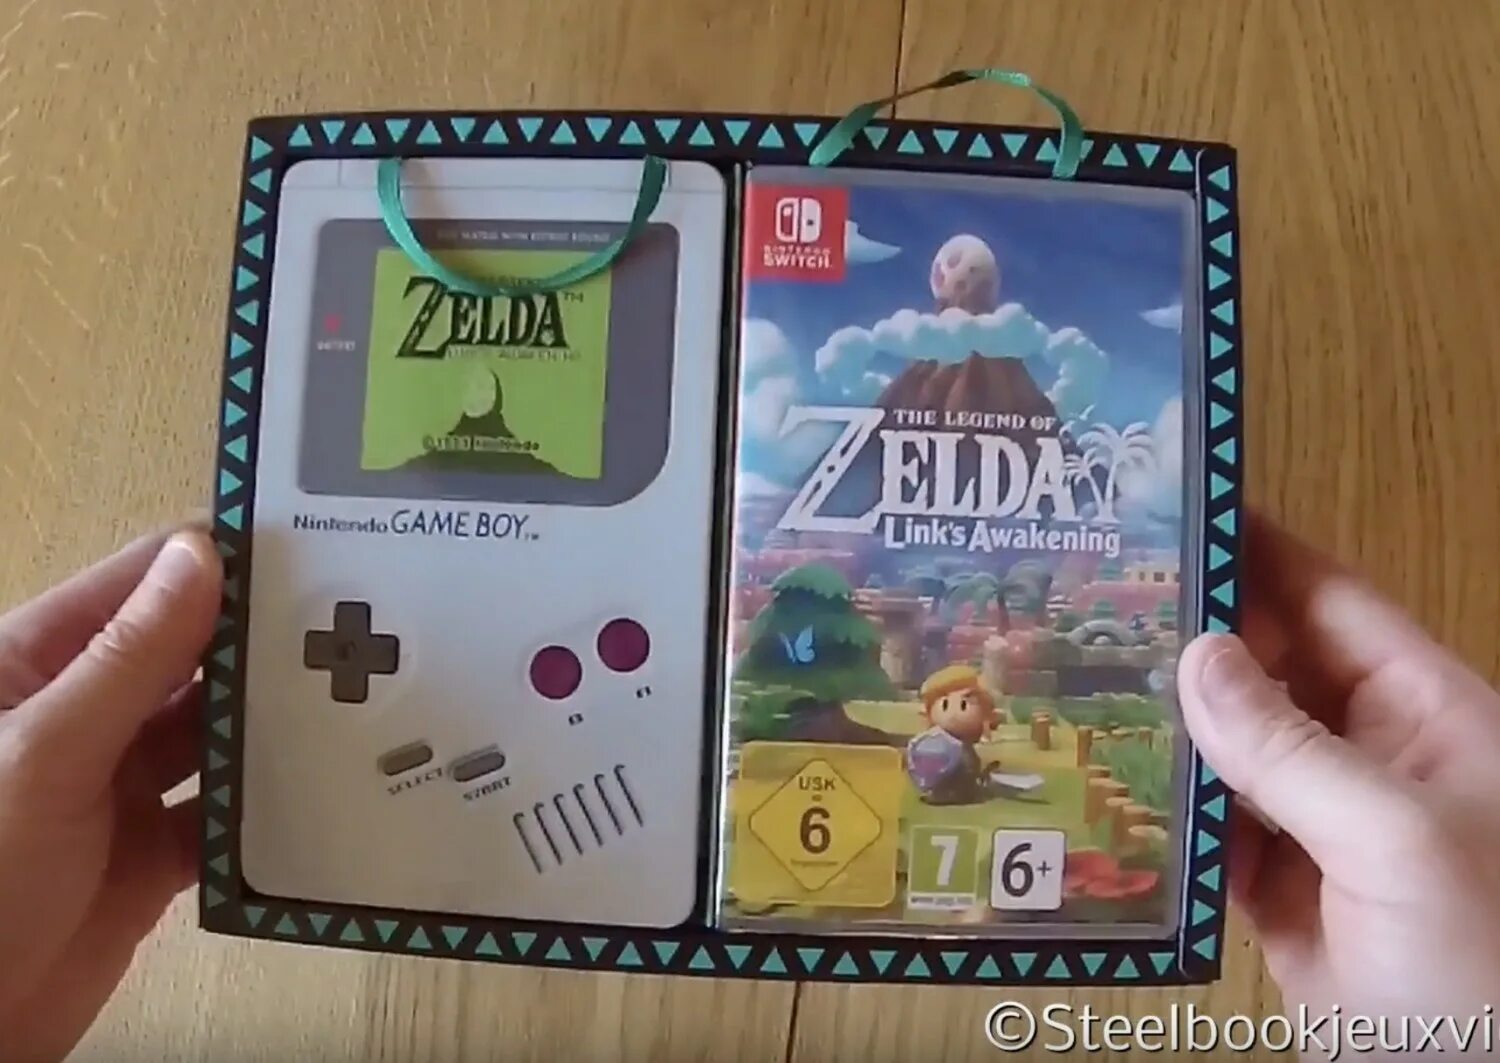 The Legend of Zelda игра Nintendo. Nintendo Switch Zelda Edition. Zelda link's Awakening Nintendo Switch. Zelda игра на Нинтендо.